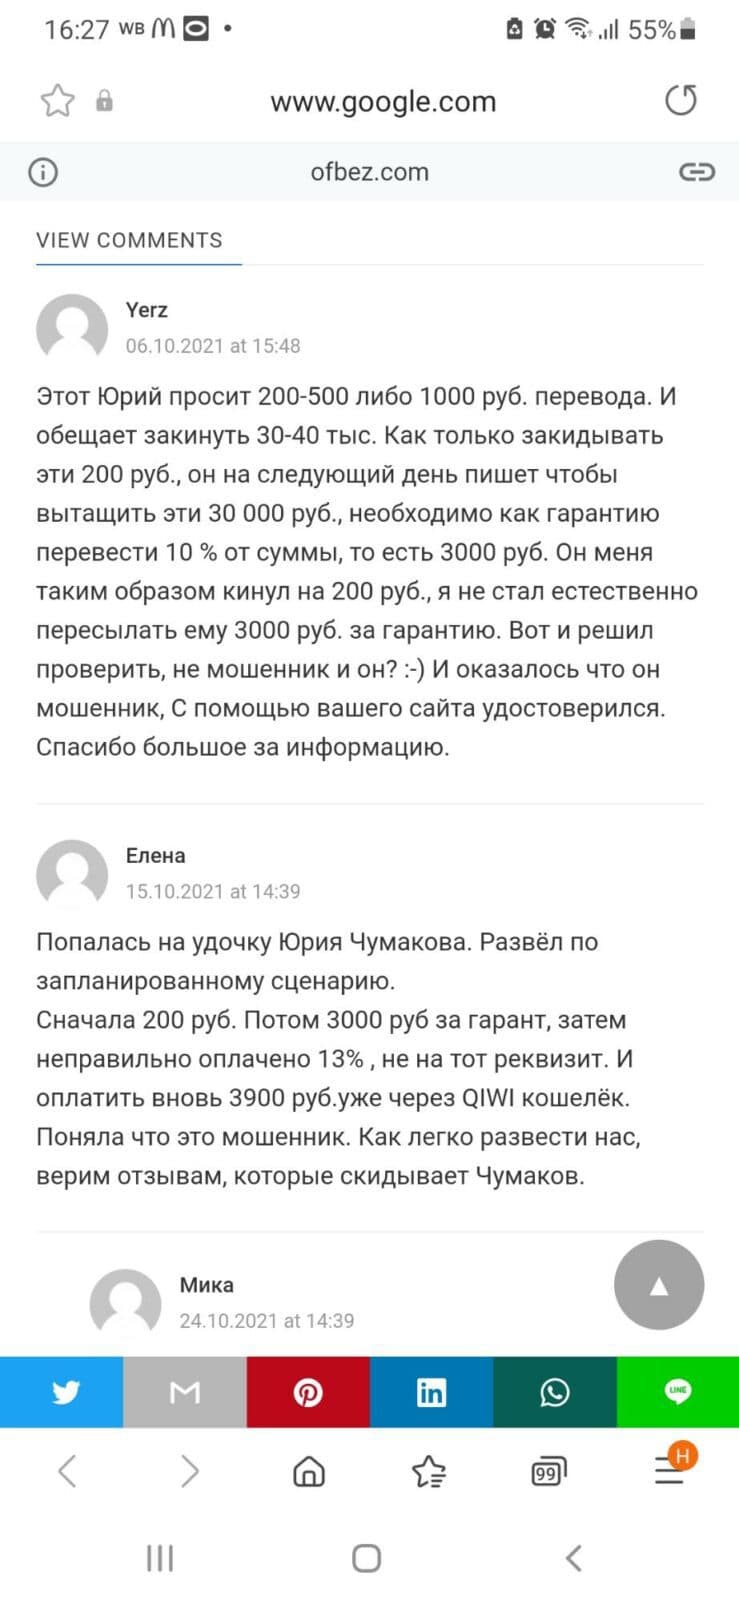 Отзывы о Юрии Чумакове